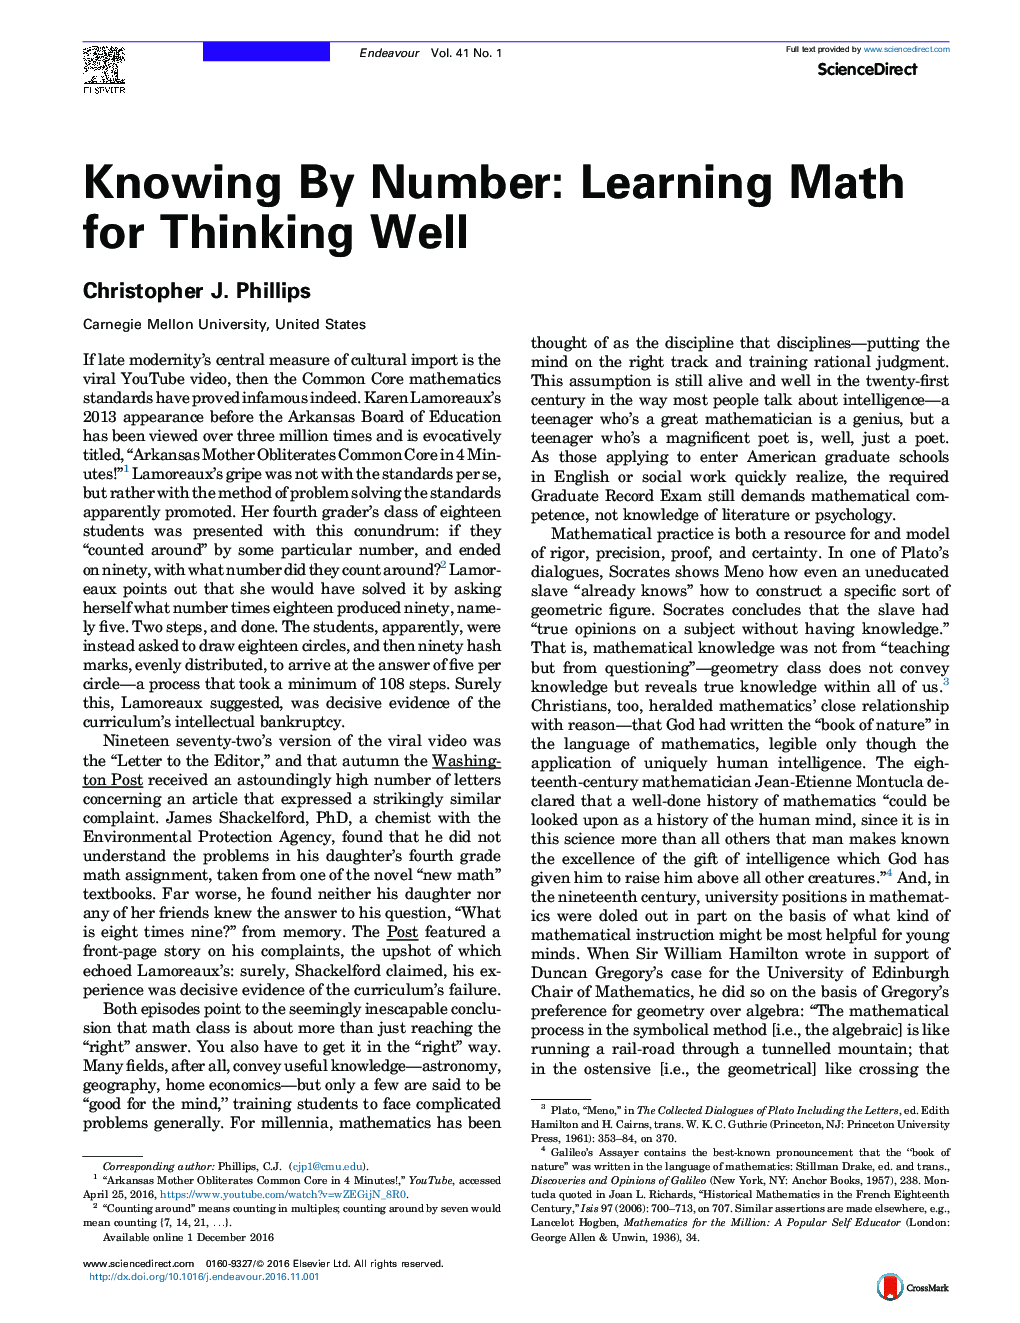 دانستن با شماره:   ریاضی یادگیری برای تفکر خوب